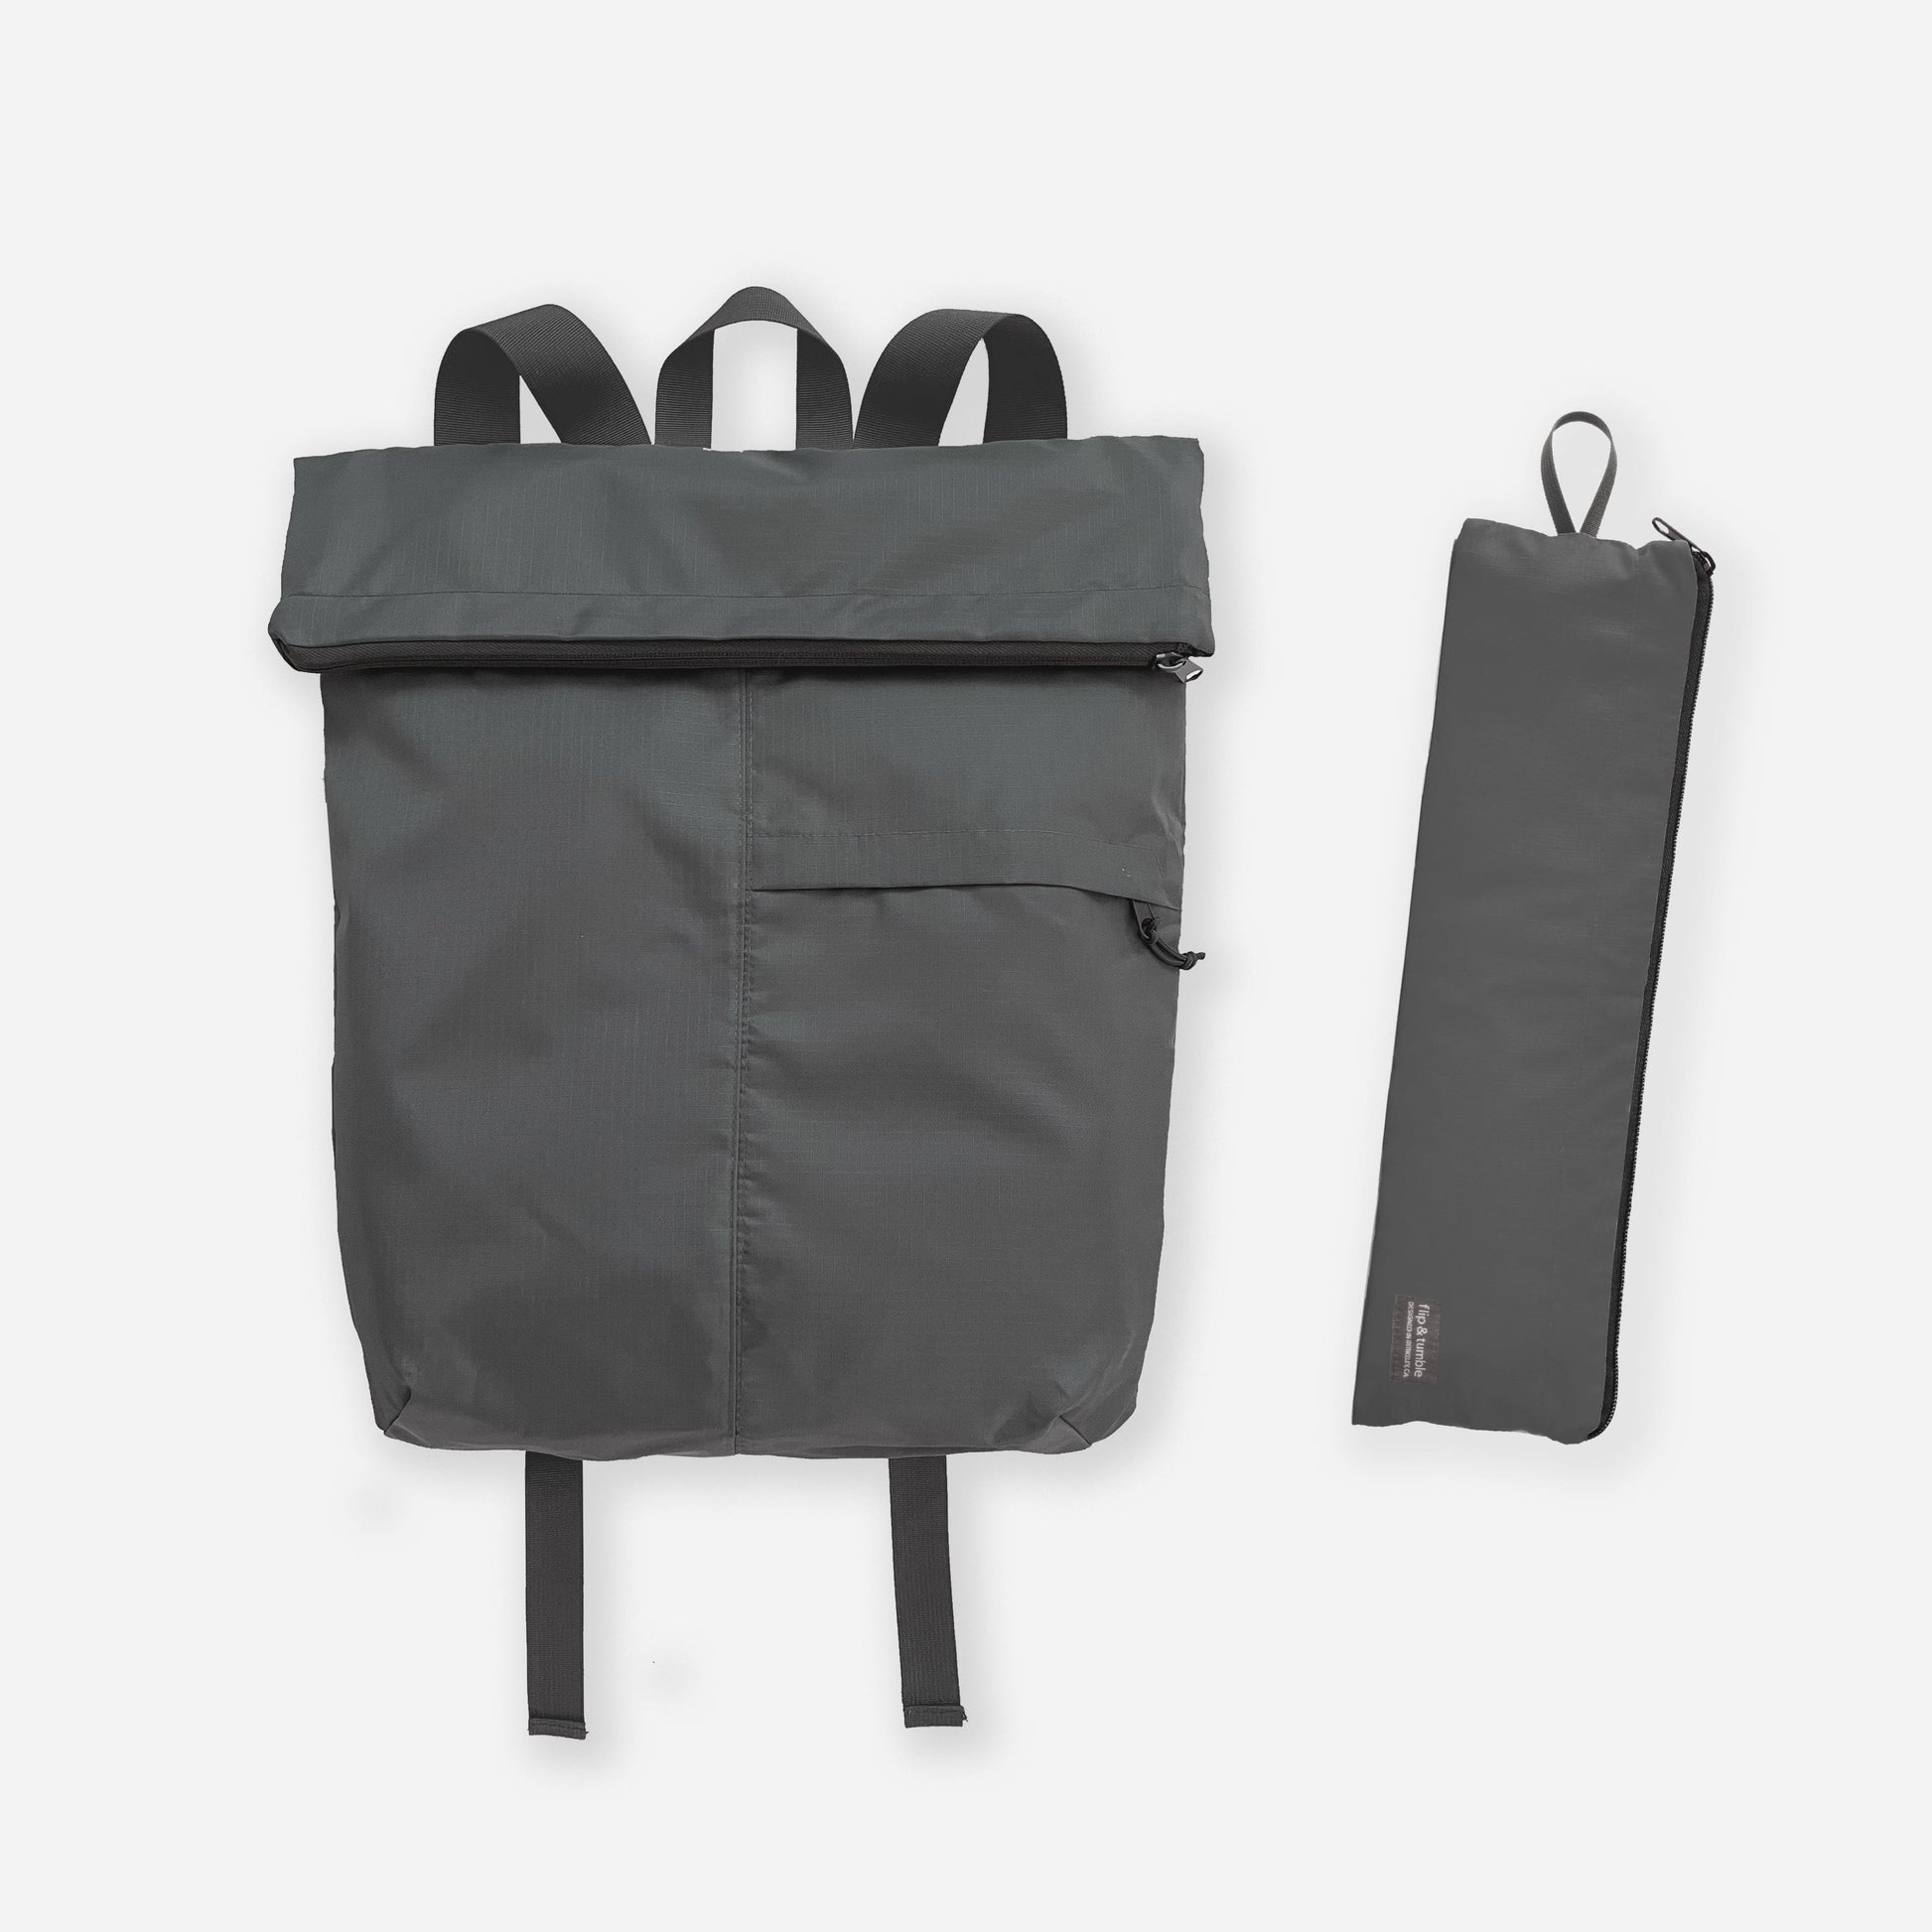 dark grey - foldable backpack for travel - flip & tumble - best packable backpack for travel, this packable foldable rucksack style is great for travel